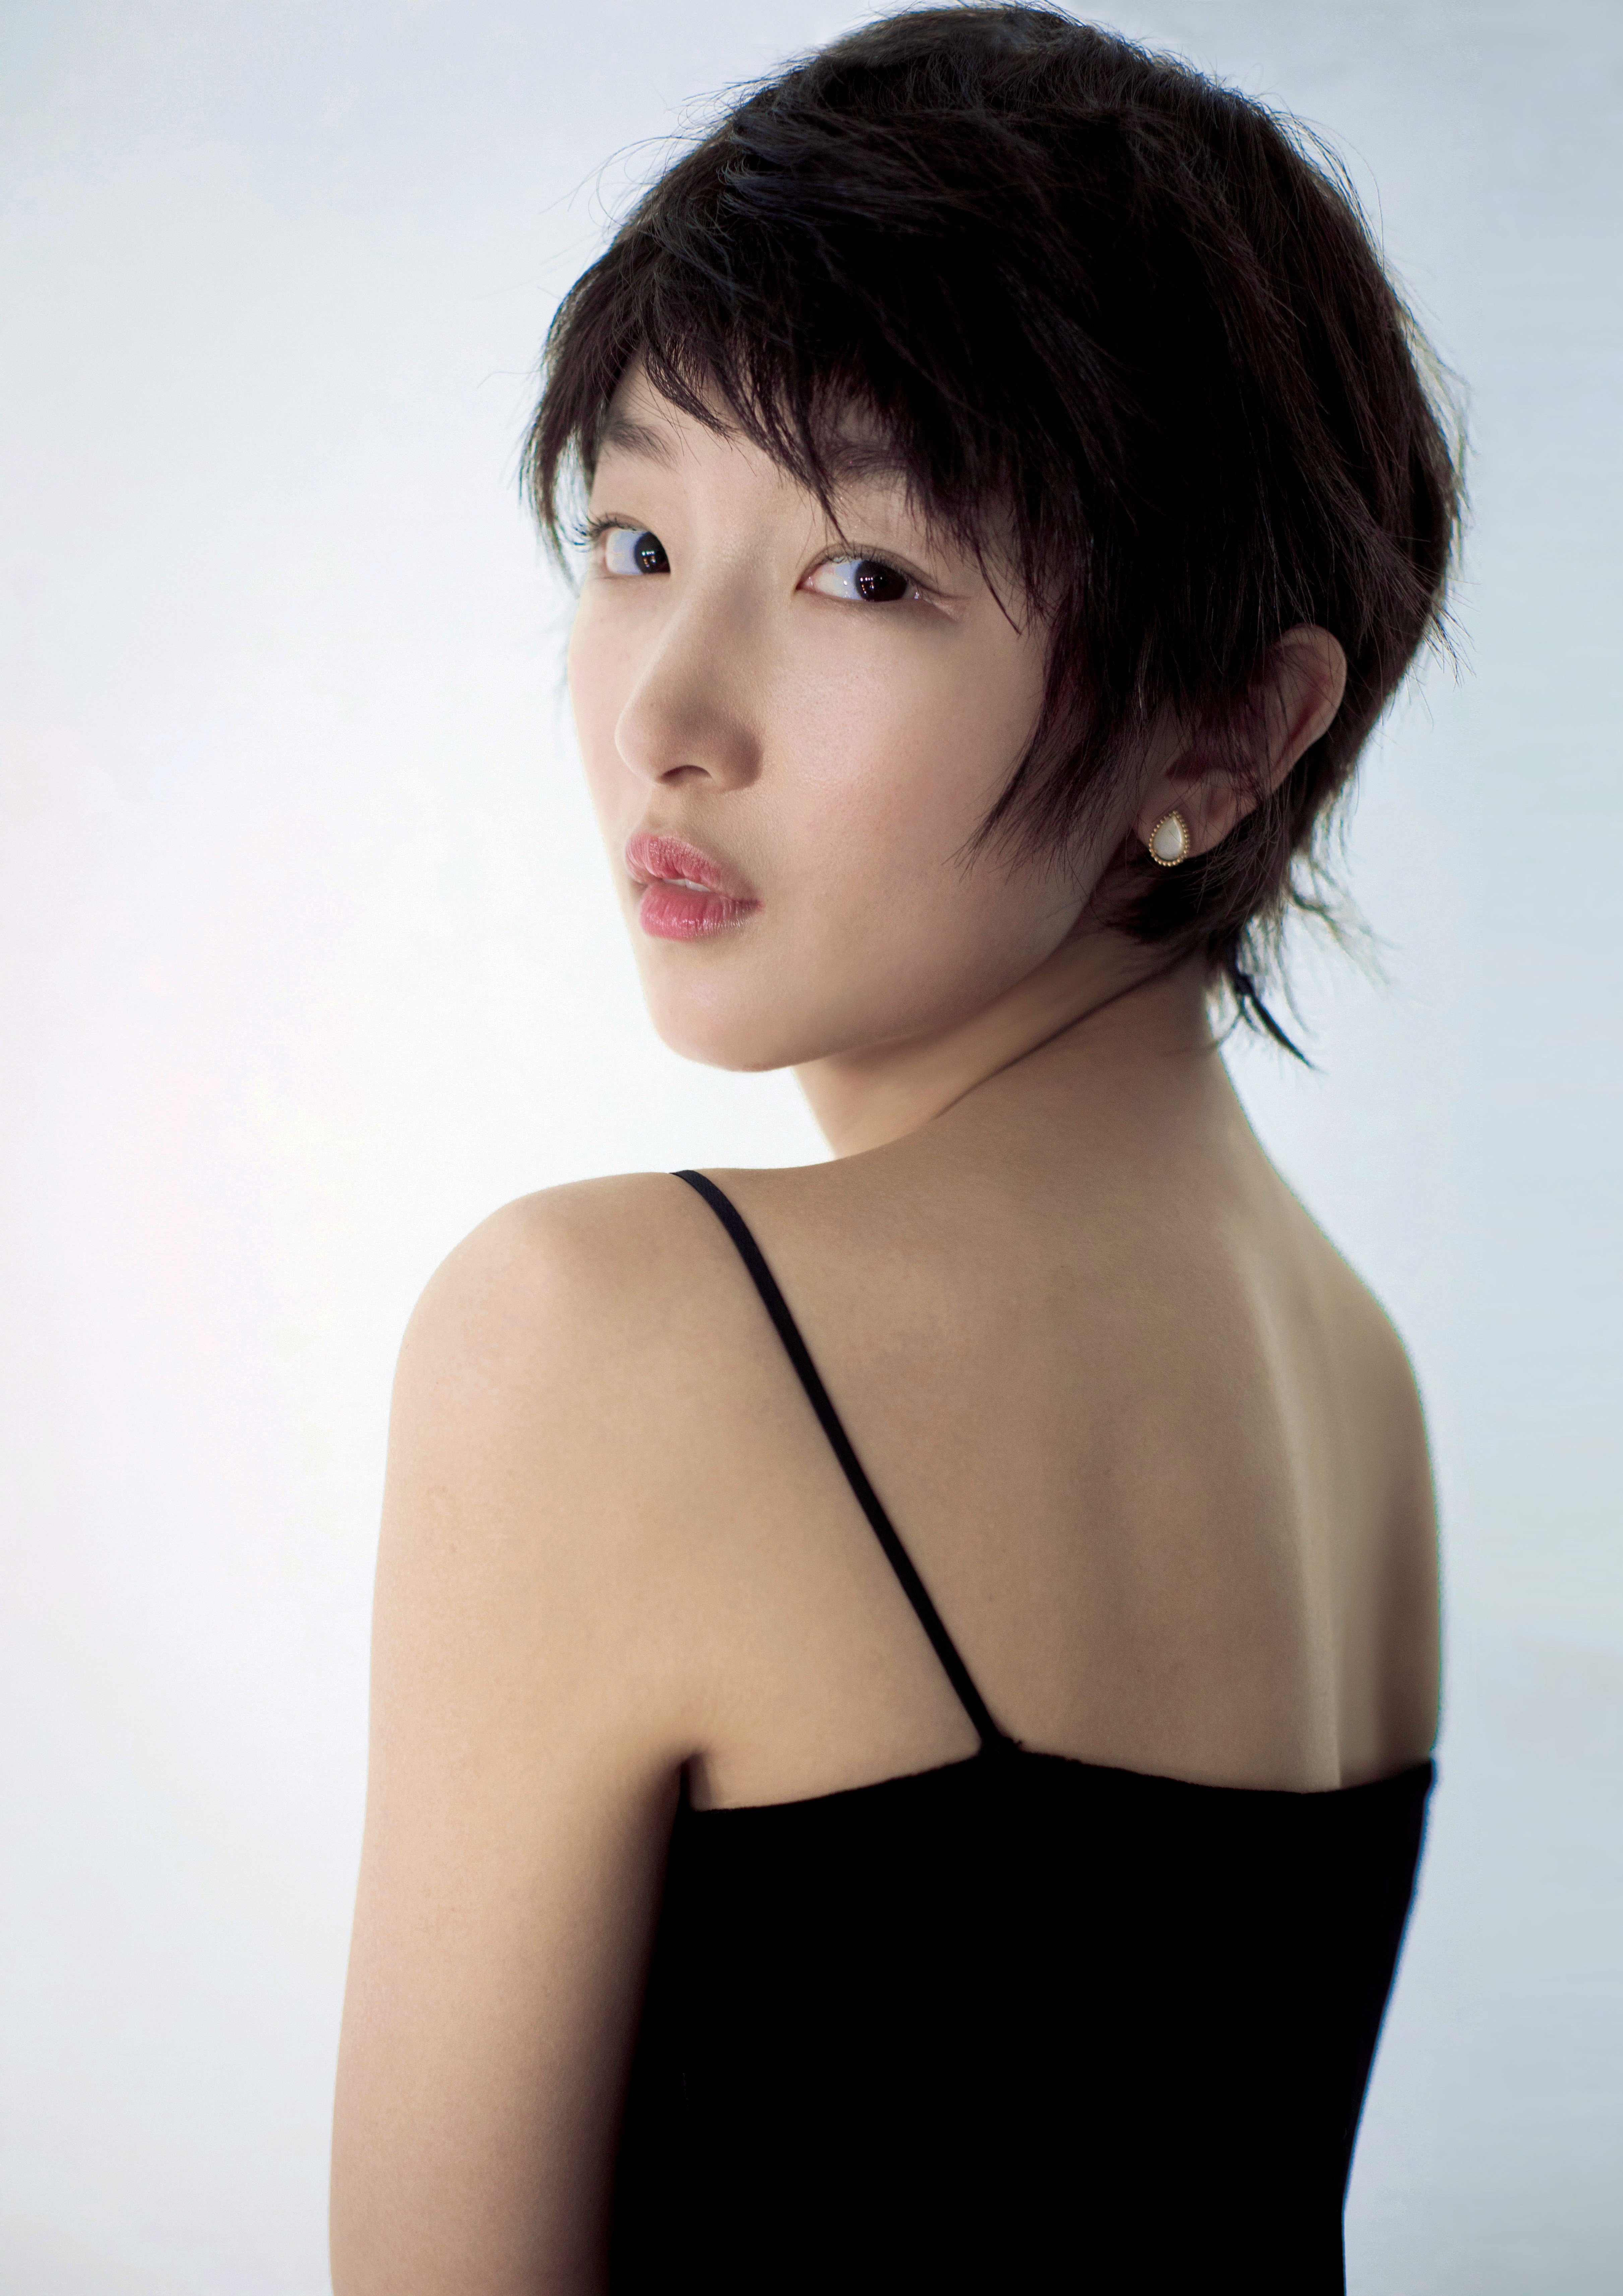 Photos of Actress Zhou Dongyu  Actresses, Actress photos, Asian